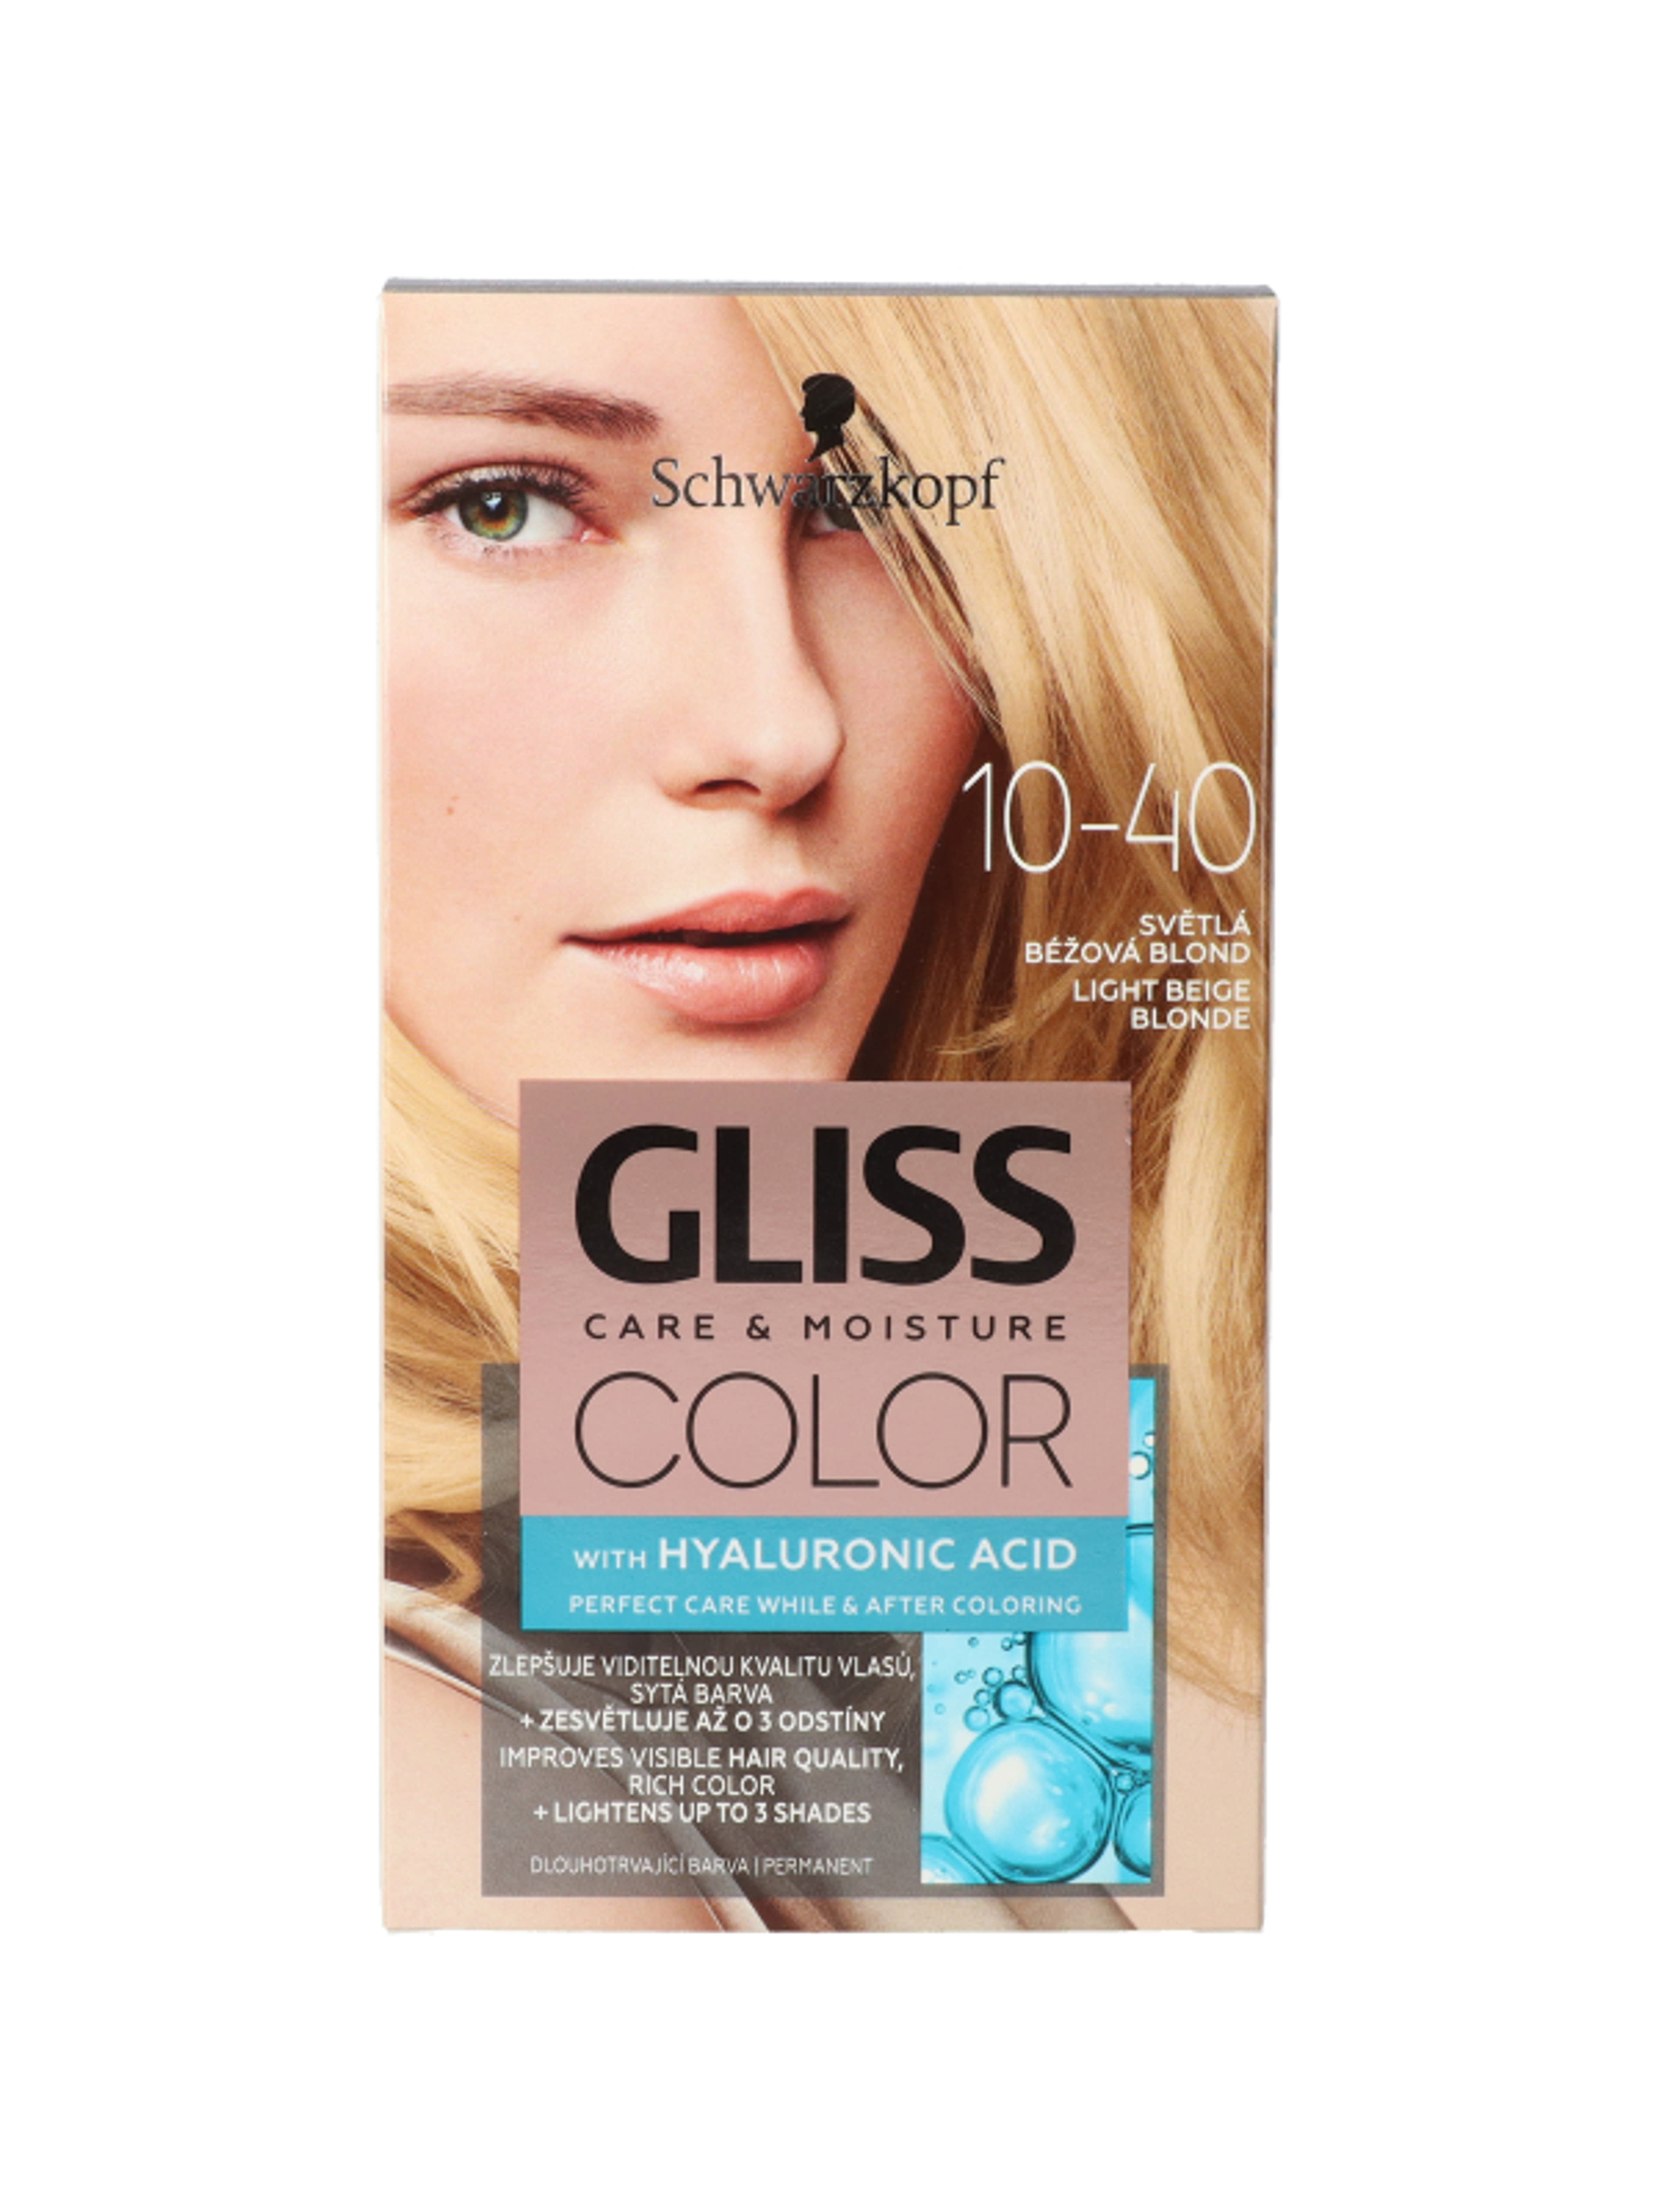 Gliss Color hajfesték, 10-40 világos bézsszőke - 1 db-2